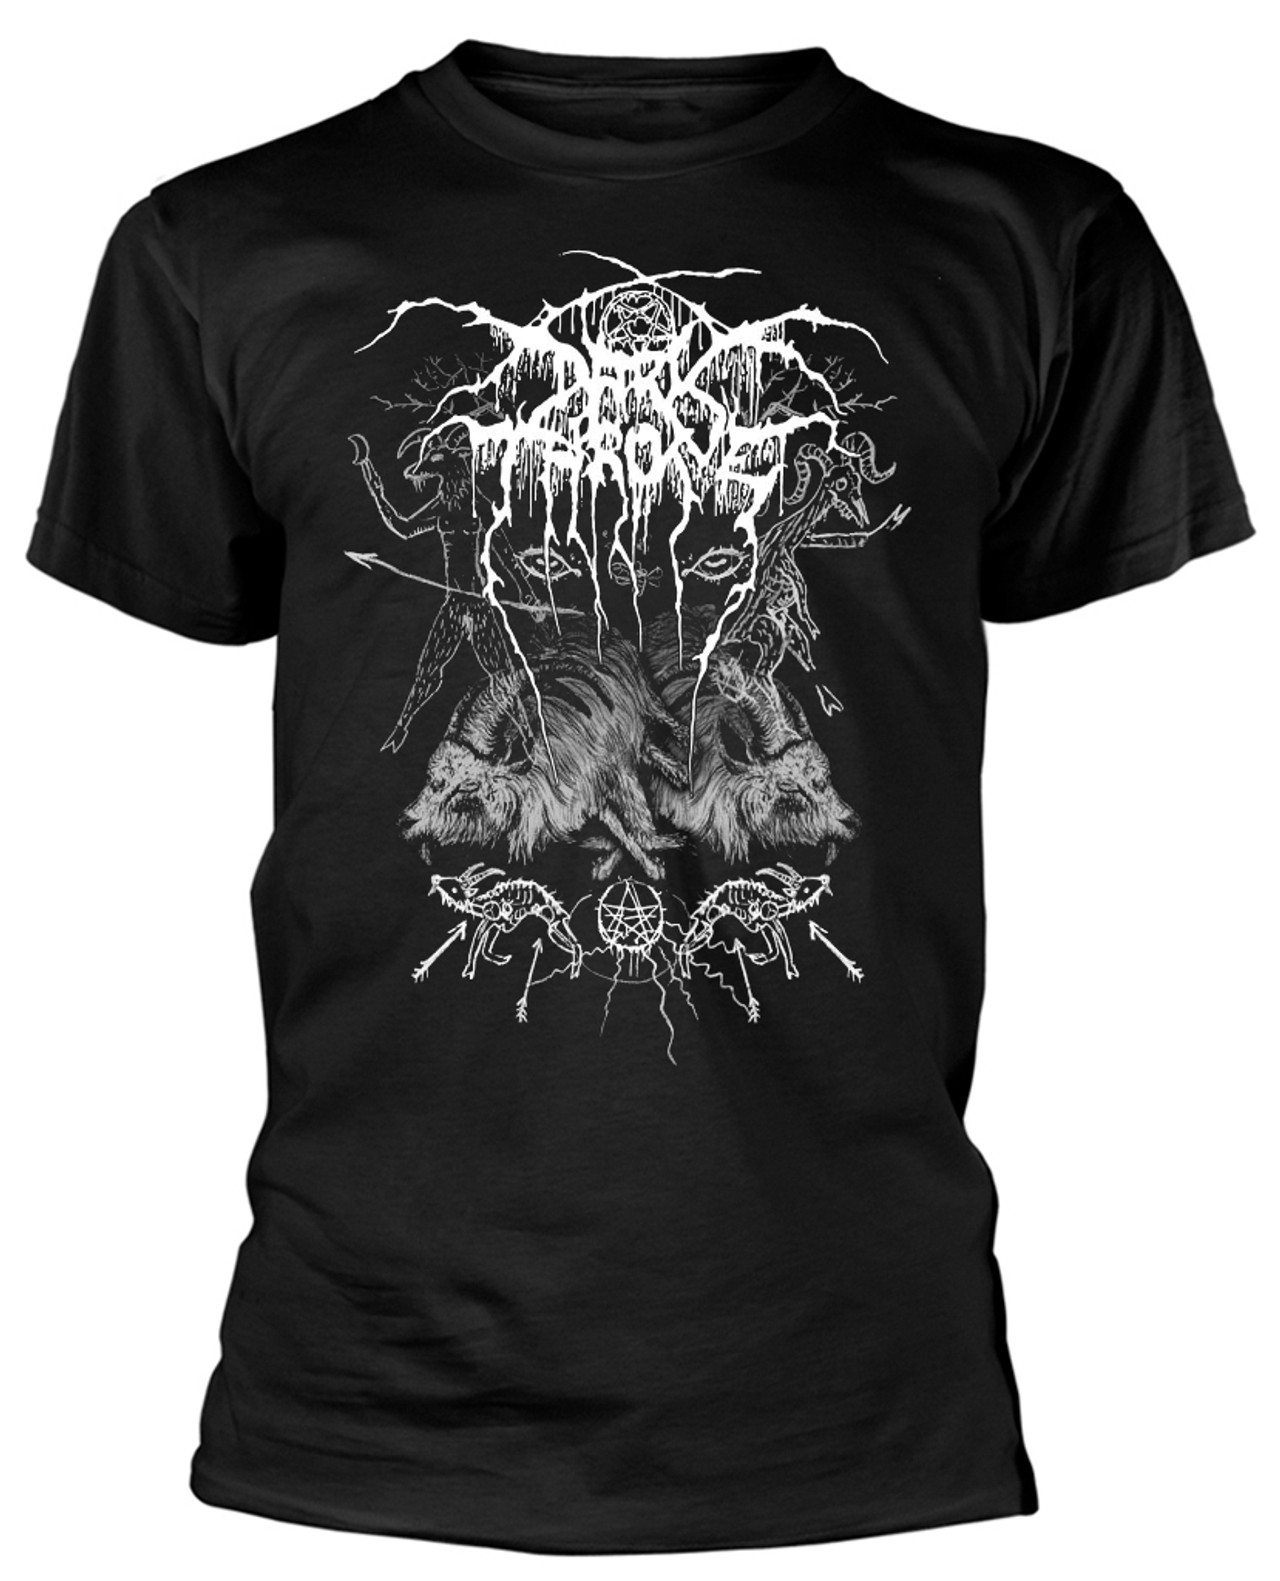 Darkthrone 'Old Star' (Black) T-Shirt